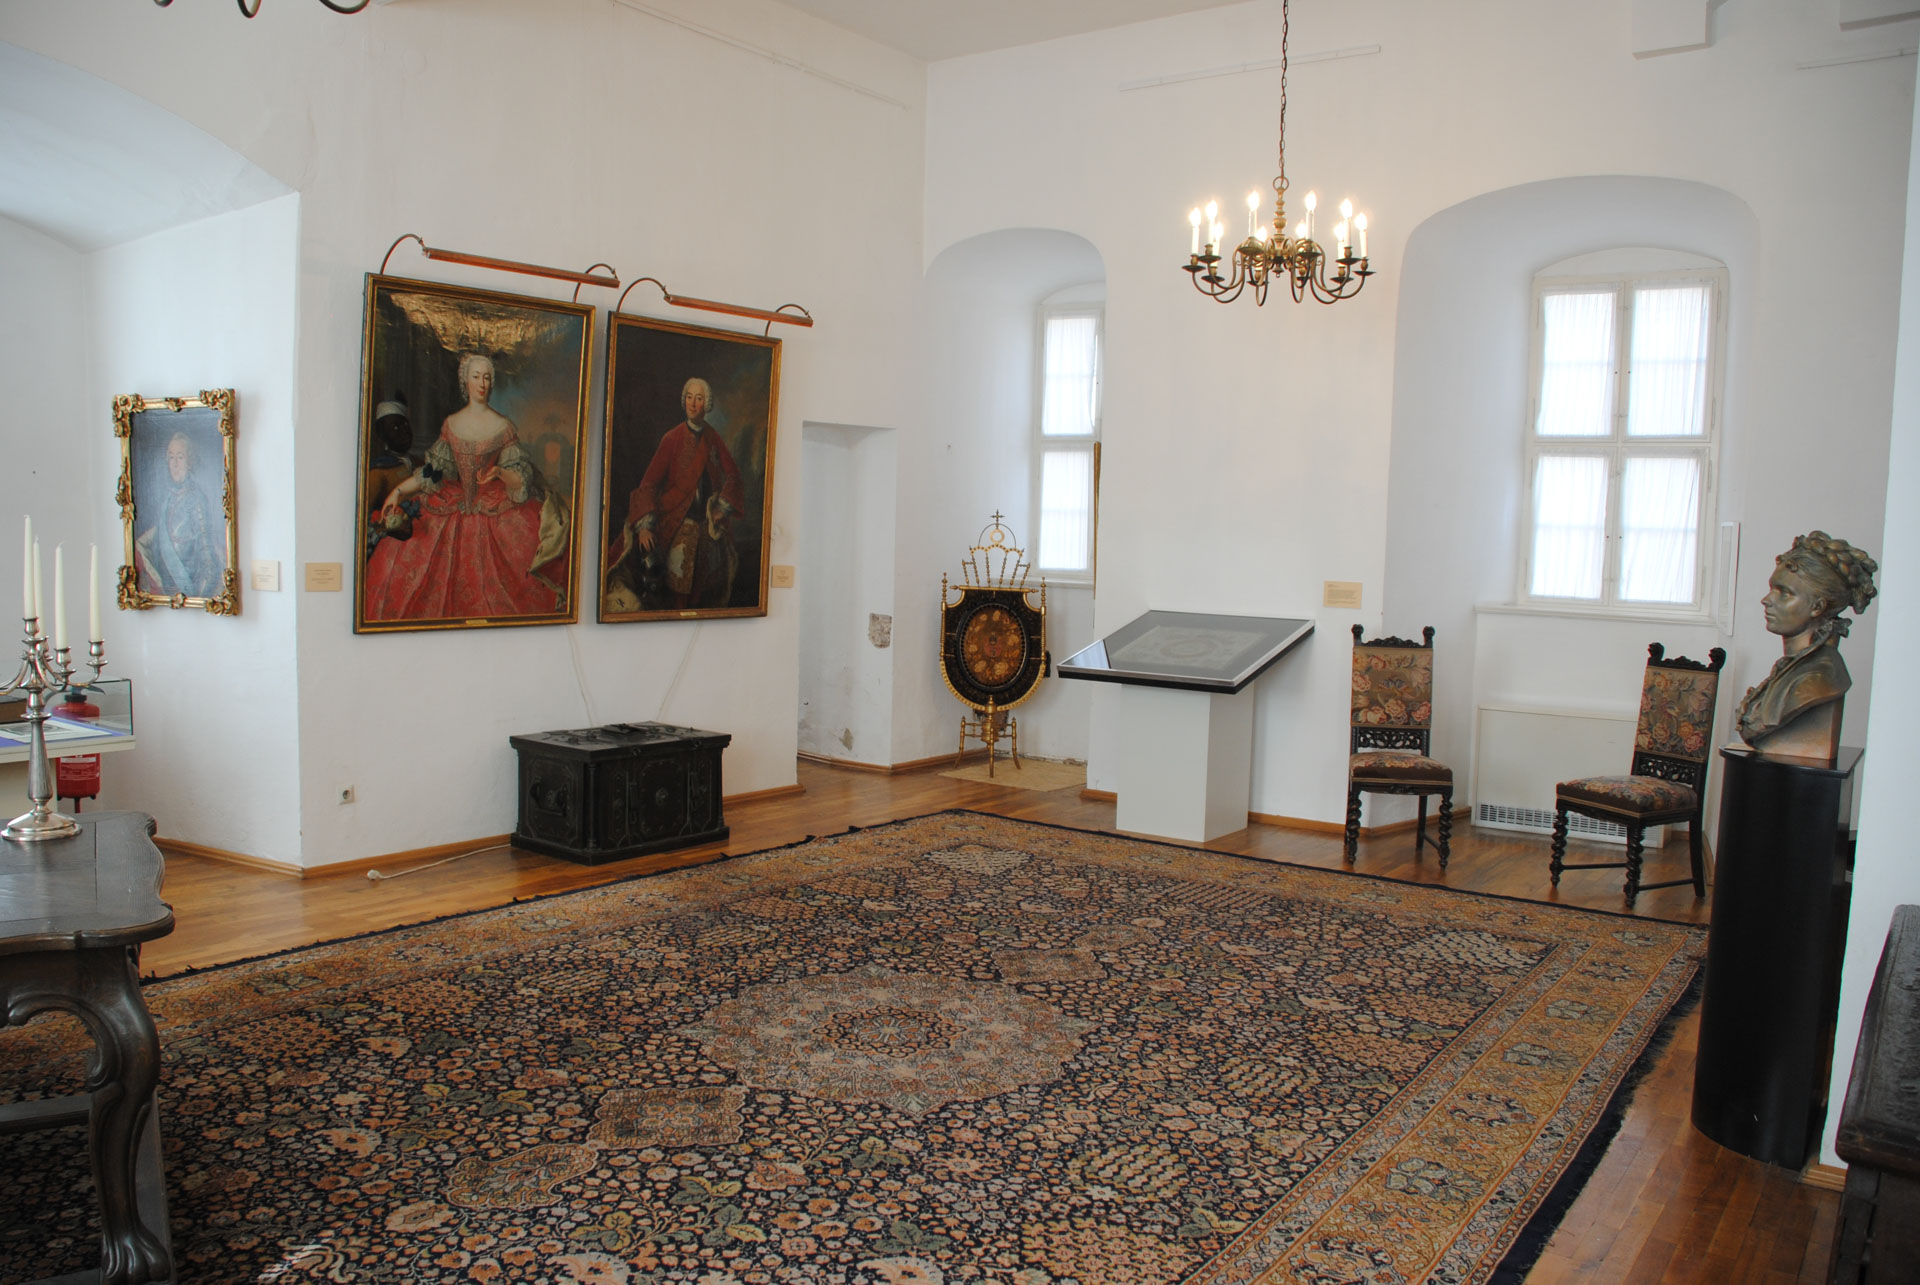 Raum mit barocken Ausstattungsstücken